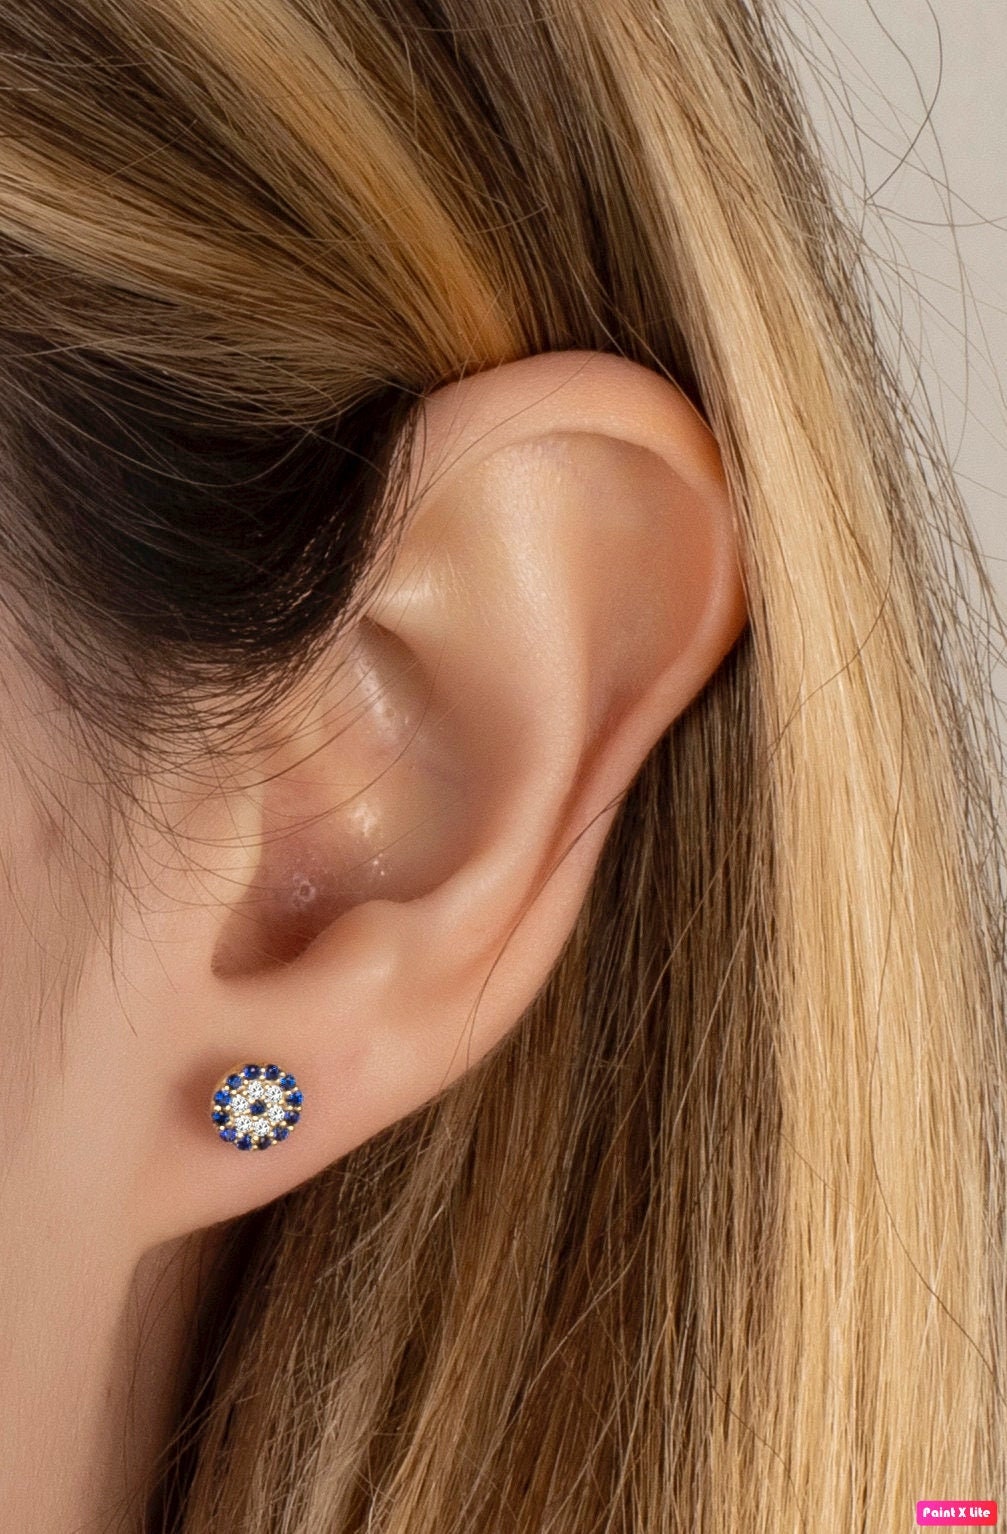 Evil Eye Coin Stud Earrings – Ciunofor